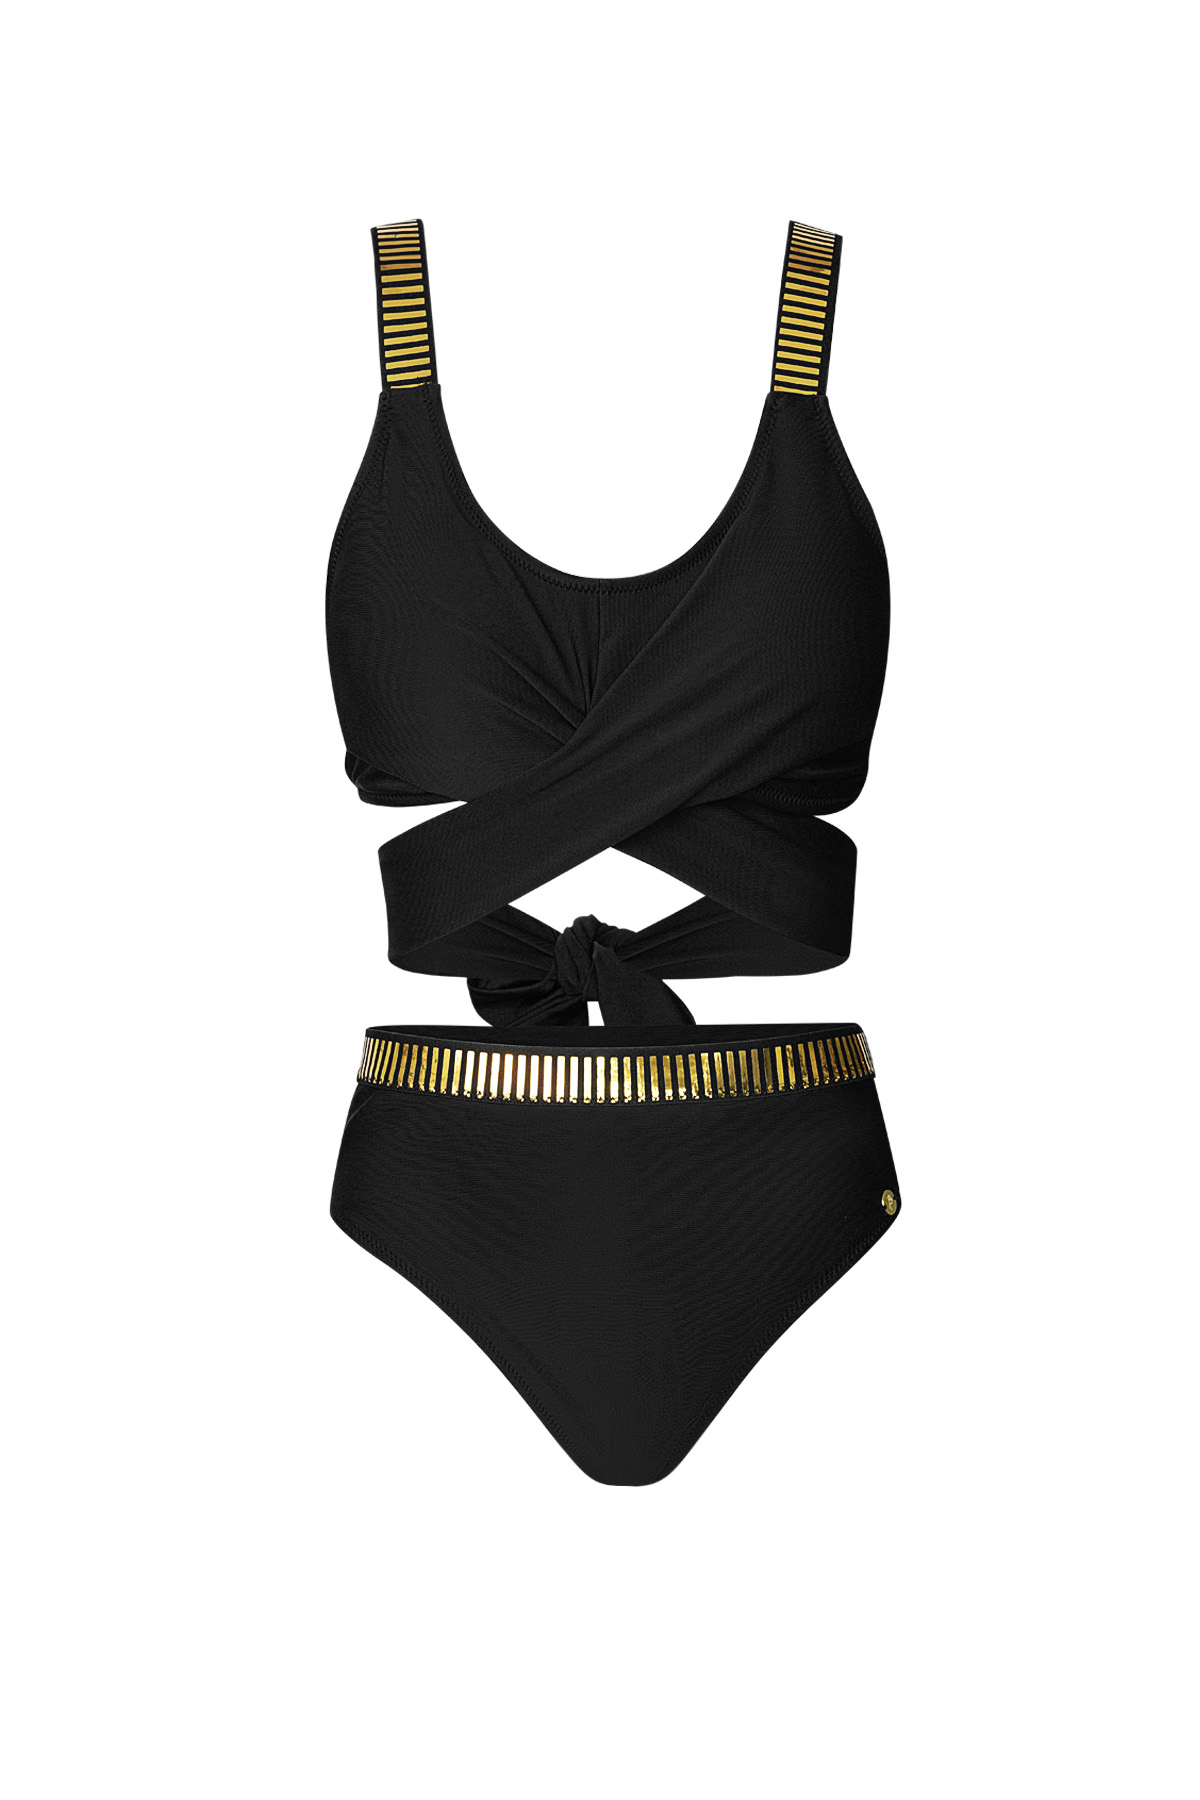 Bikini mit Knöpfen, goldene Details - schwarz S